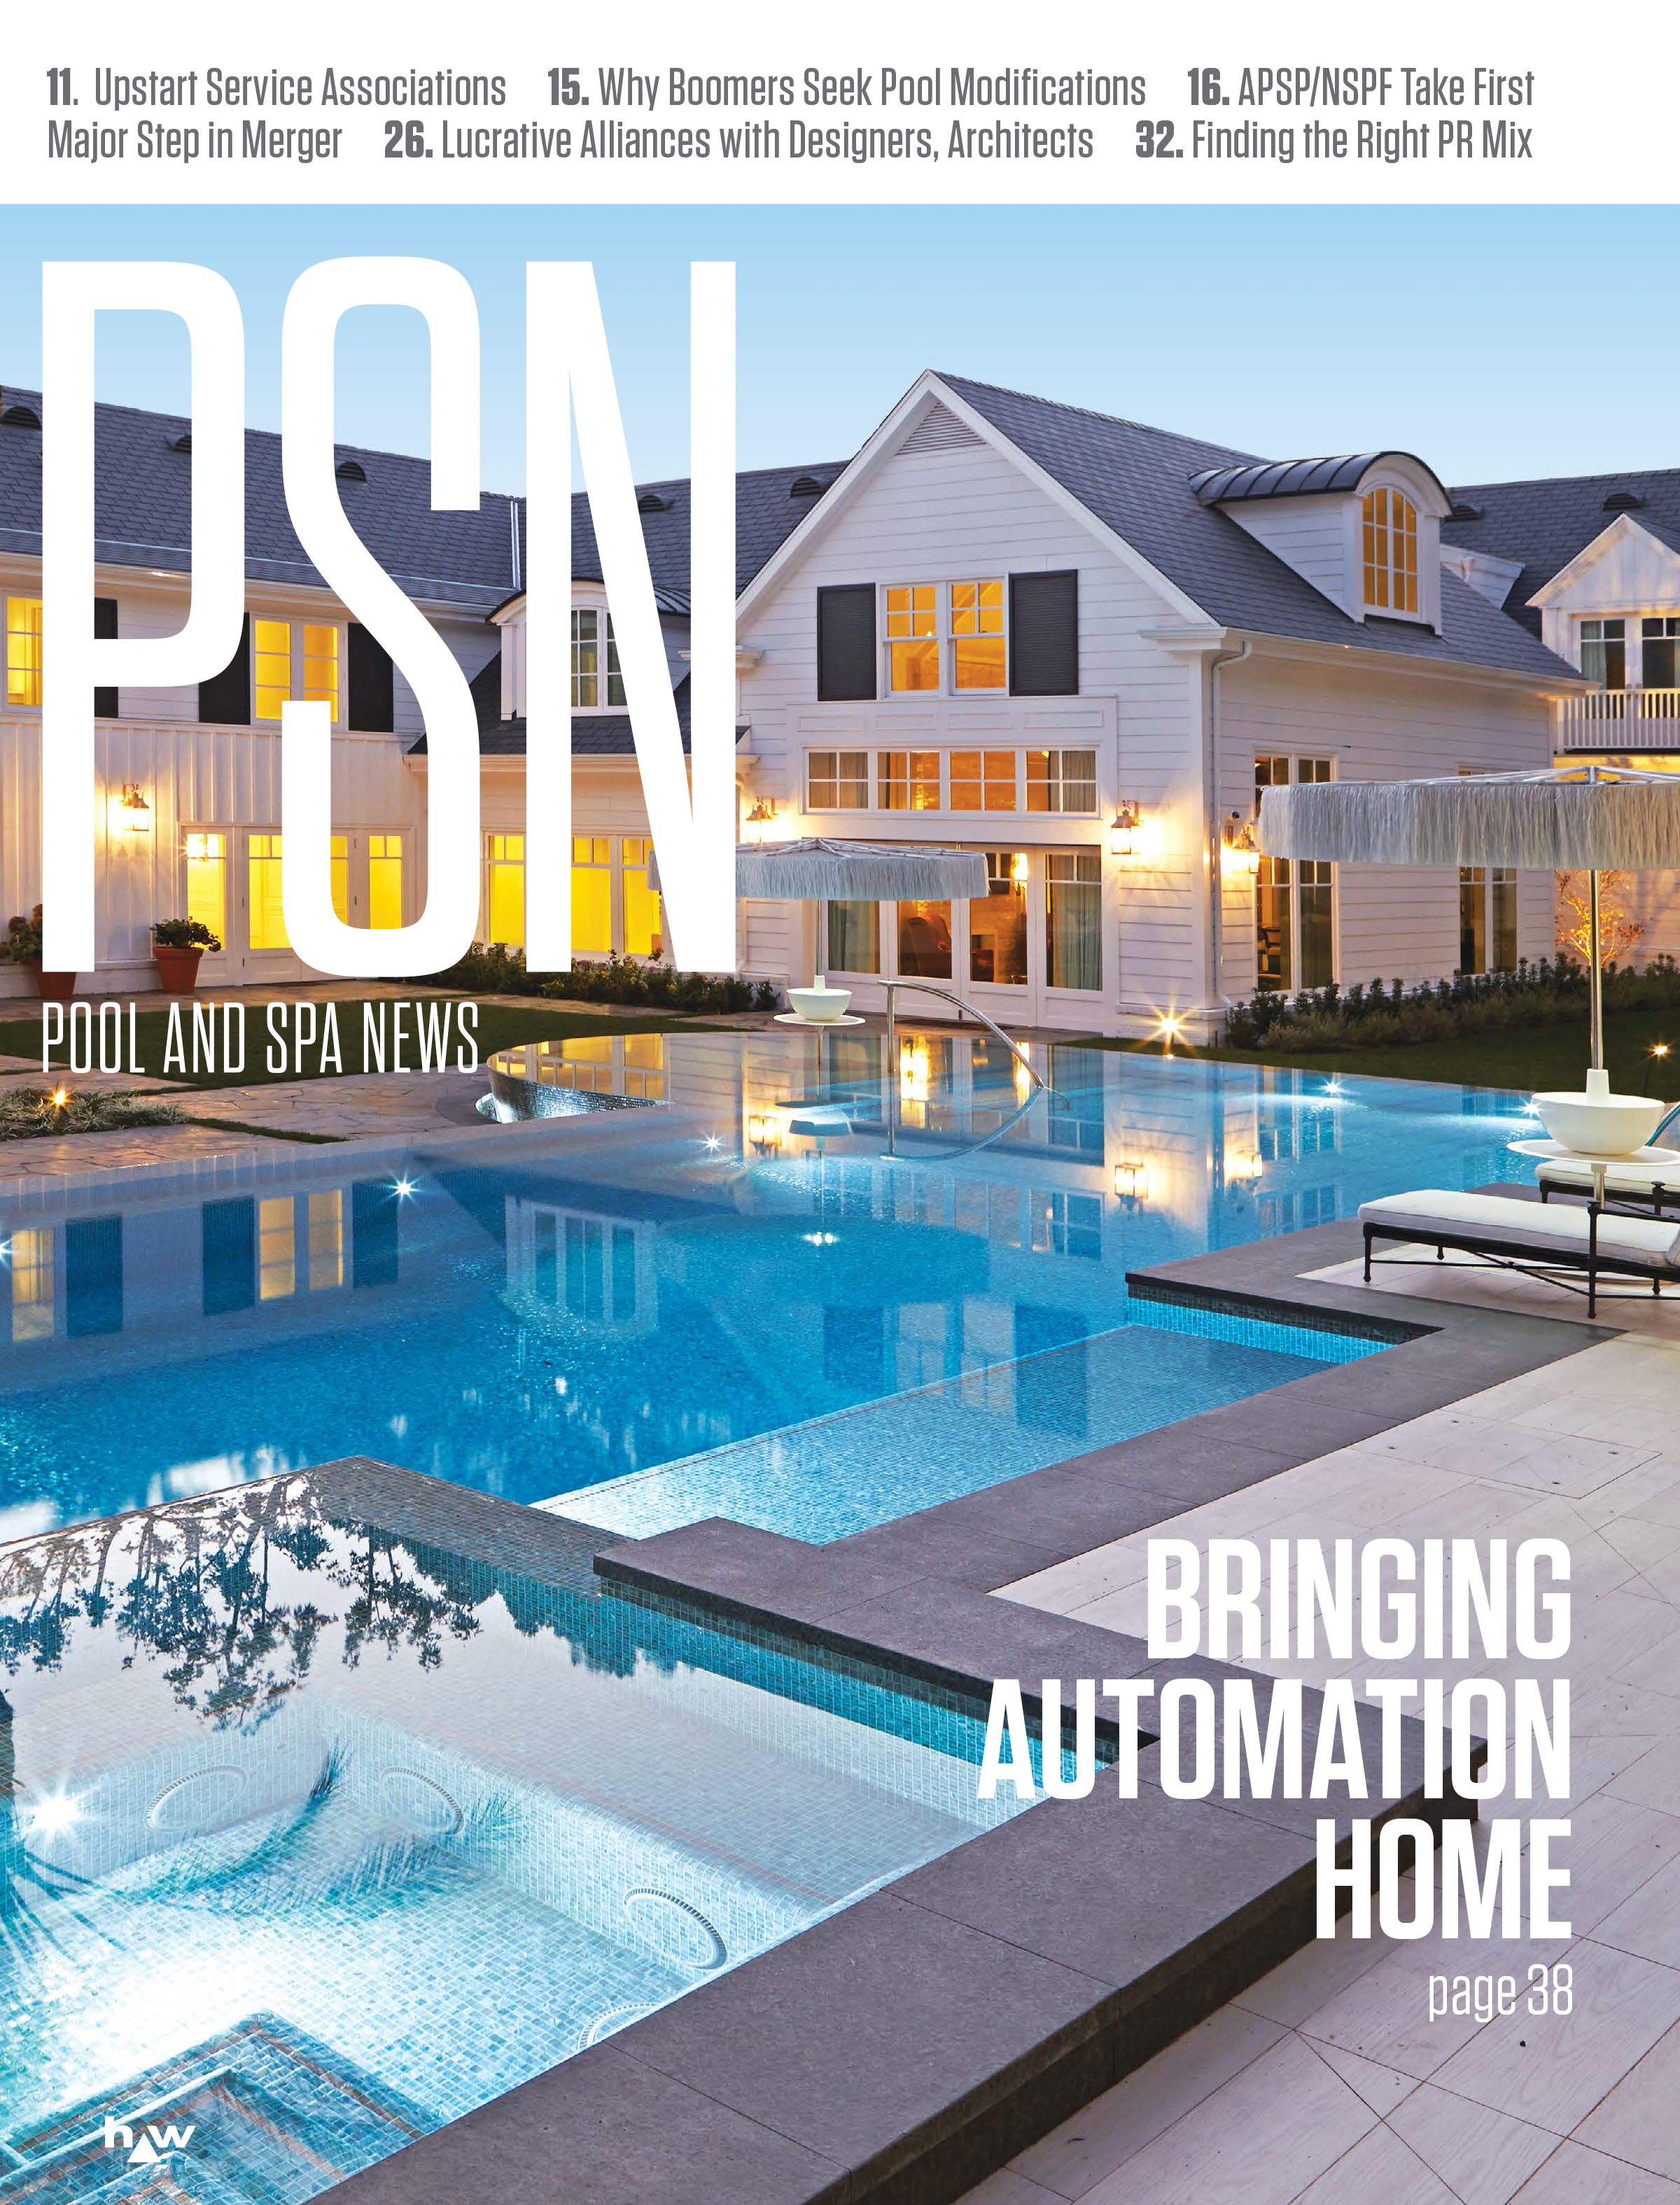 Pool and Spa News Magazine